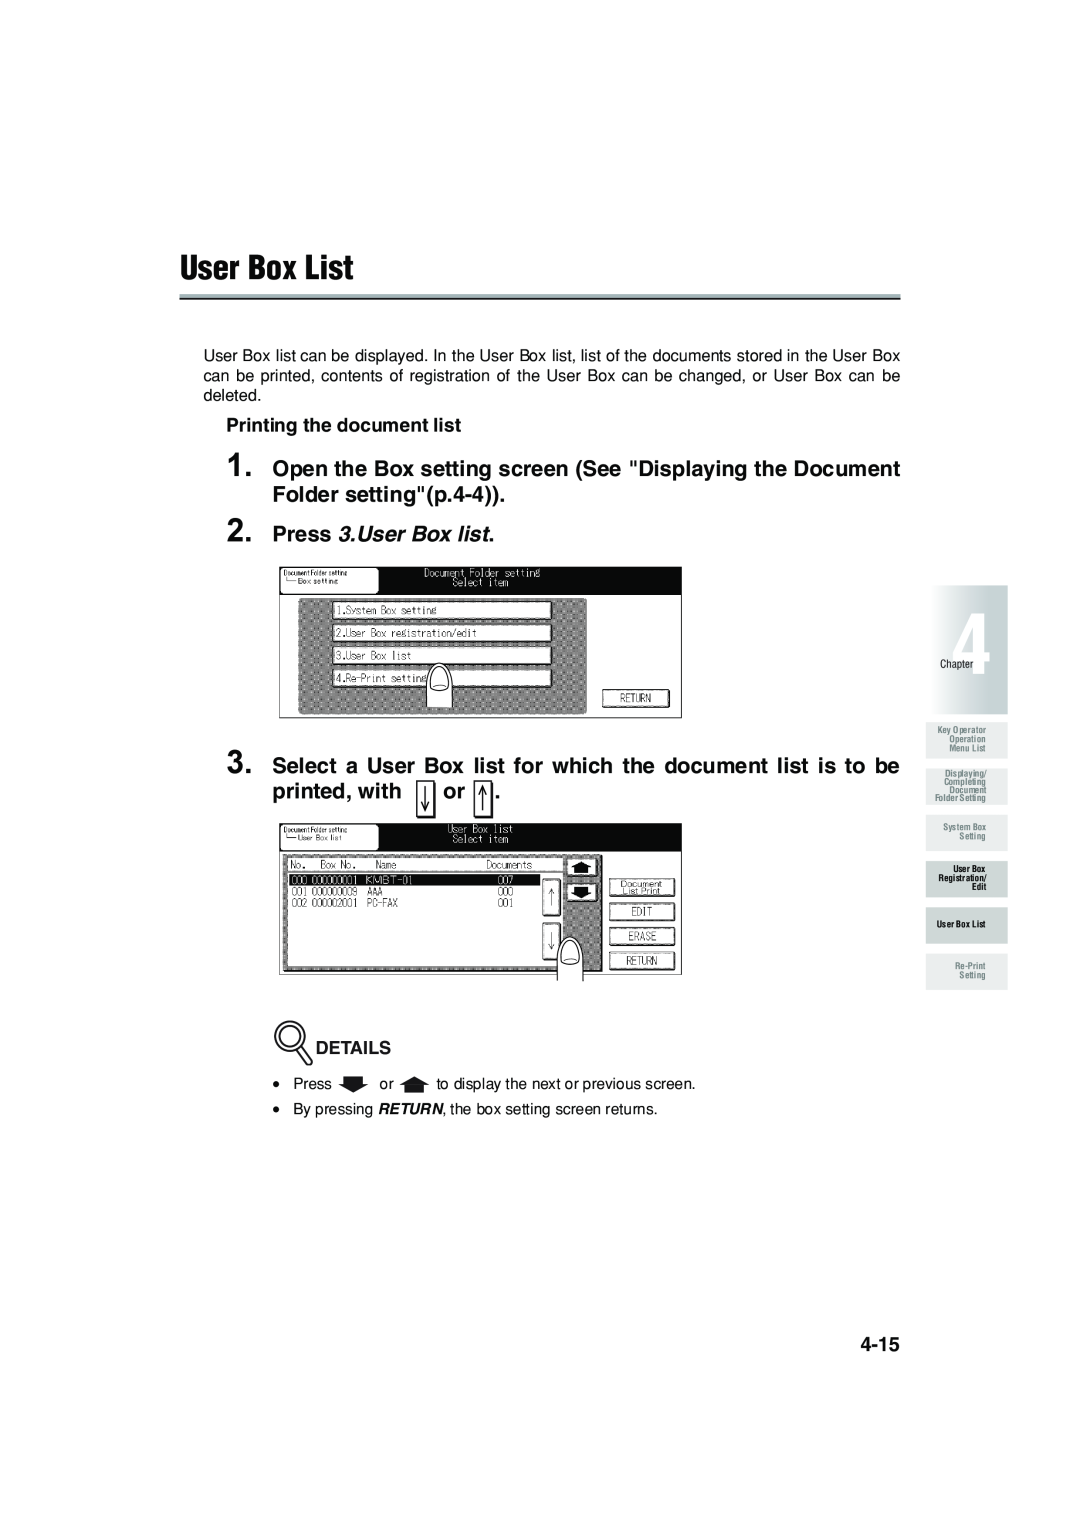 Konica Minolta 7222 manual User Box List, Press 3.User Box list 